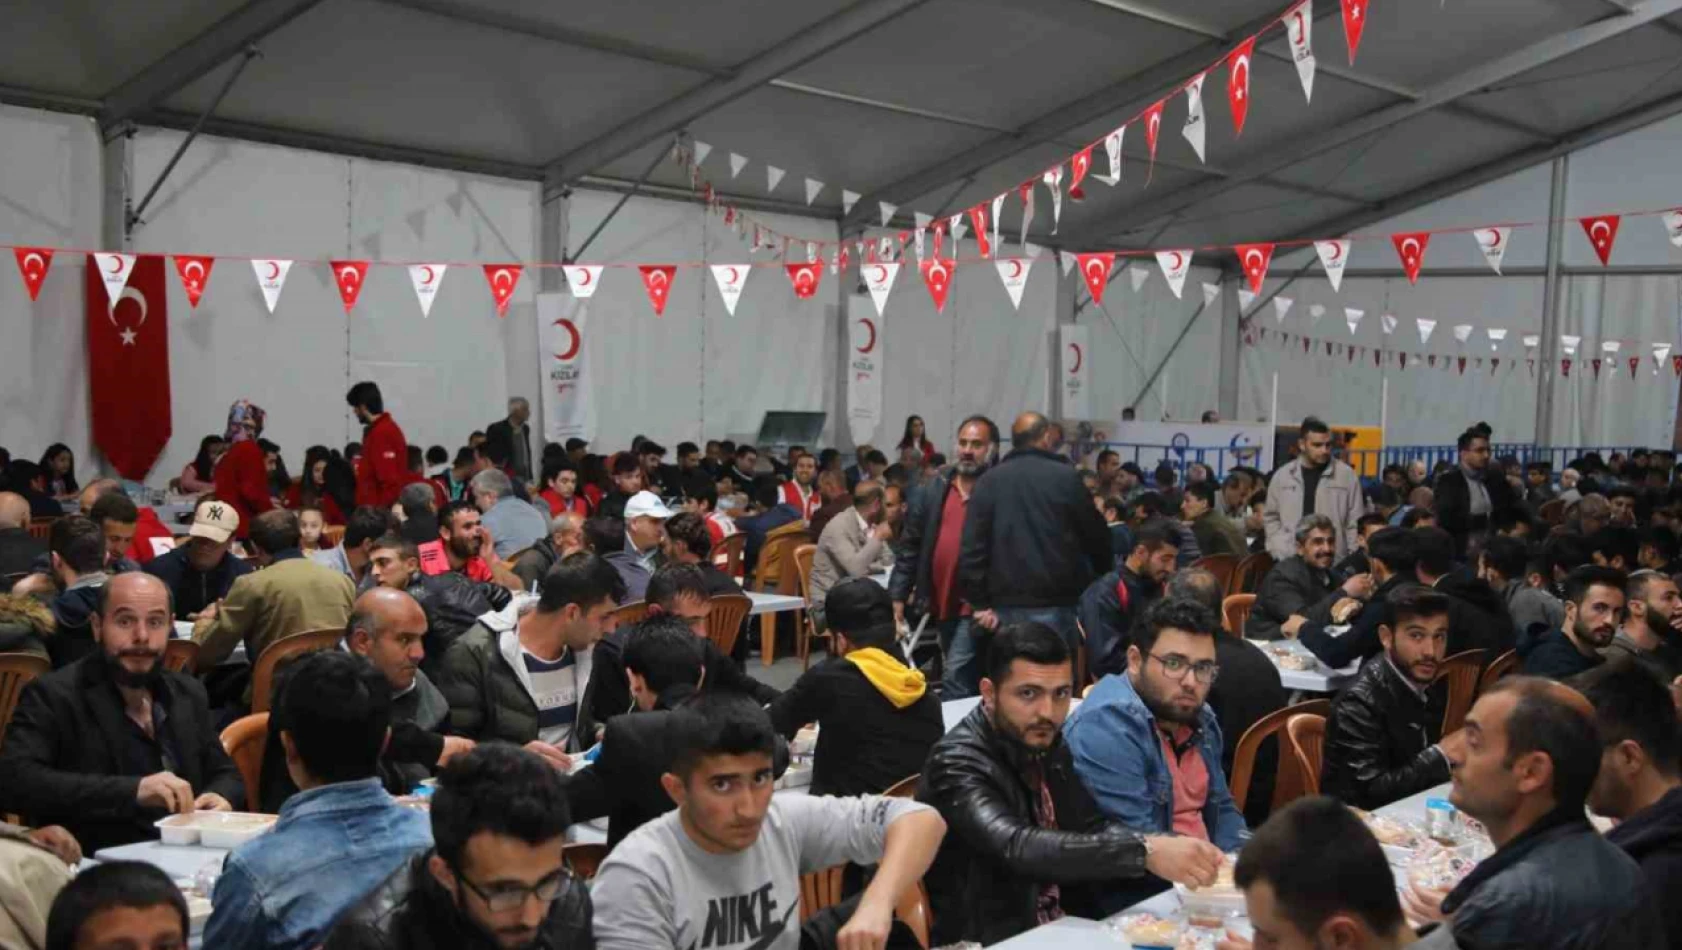 Elazığ Belediyesi'nden bin kişilik iftar sofrası